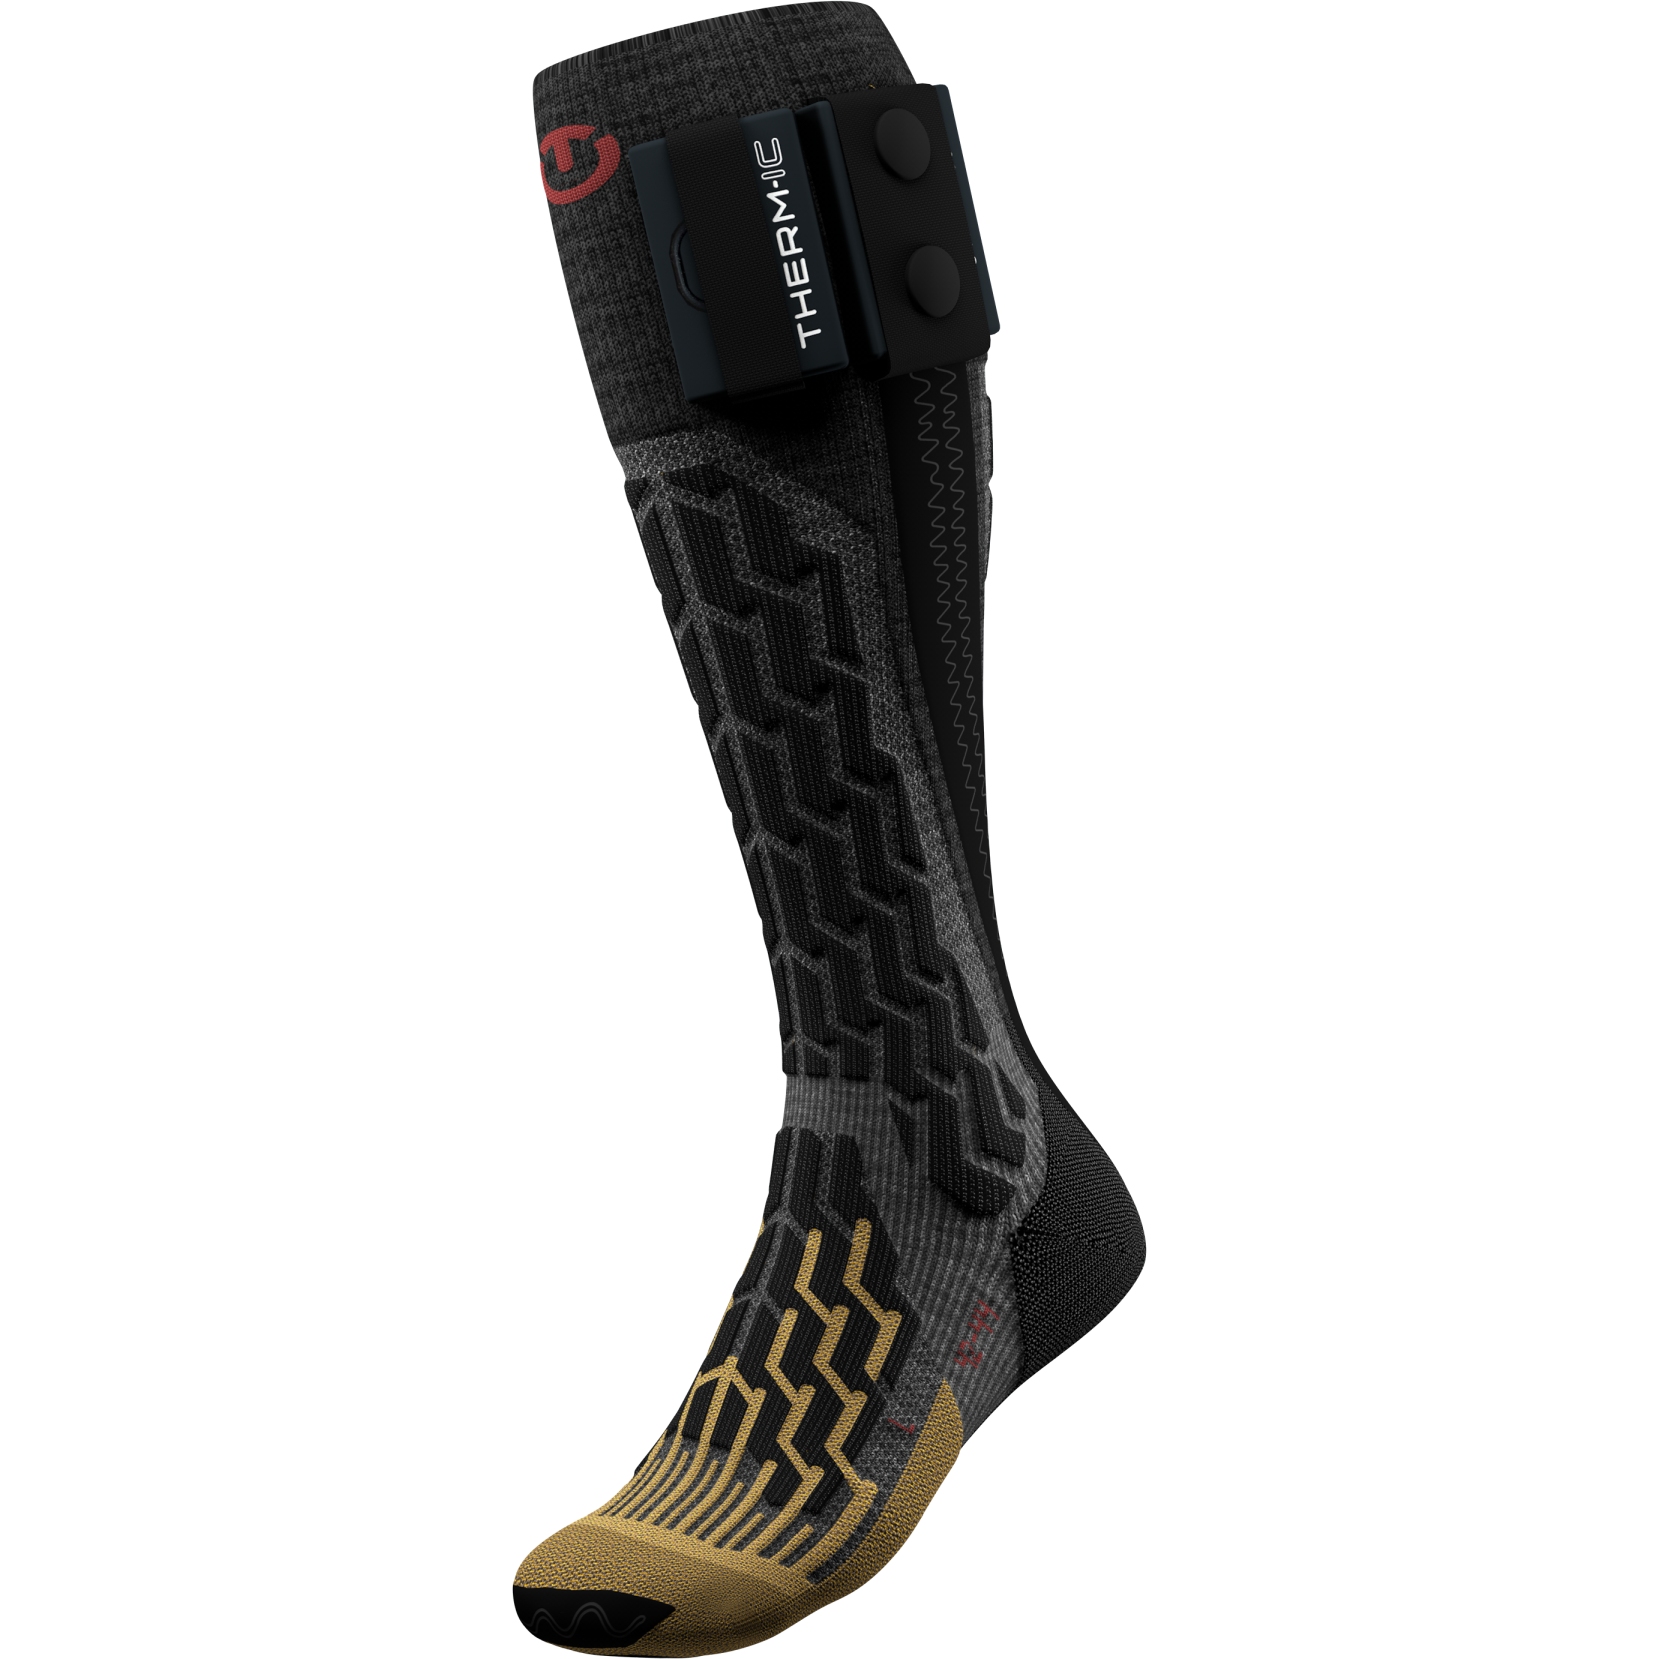 Bild von therm-ic Powersock Heat Fusion Beheizbare Socken - schwarz / gold